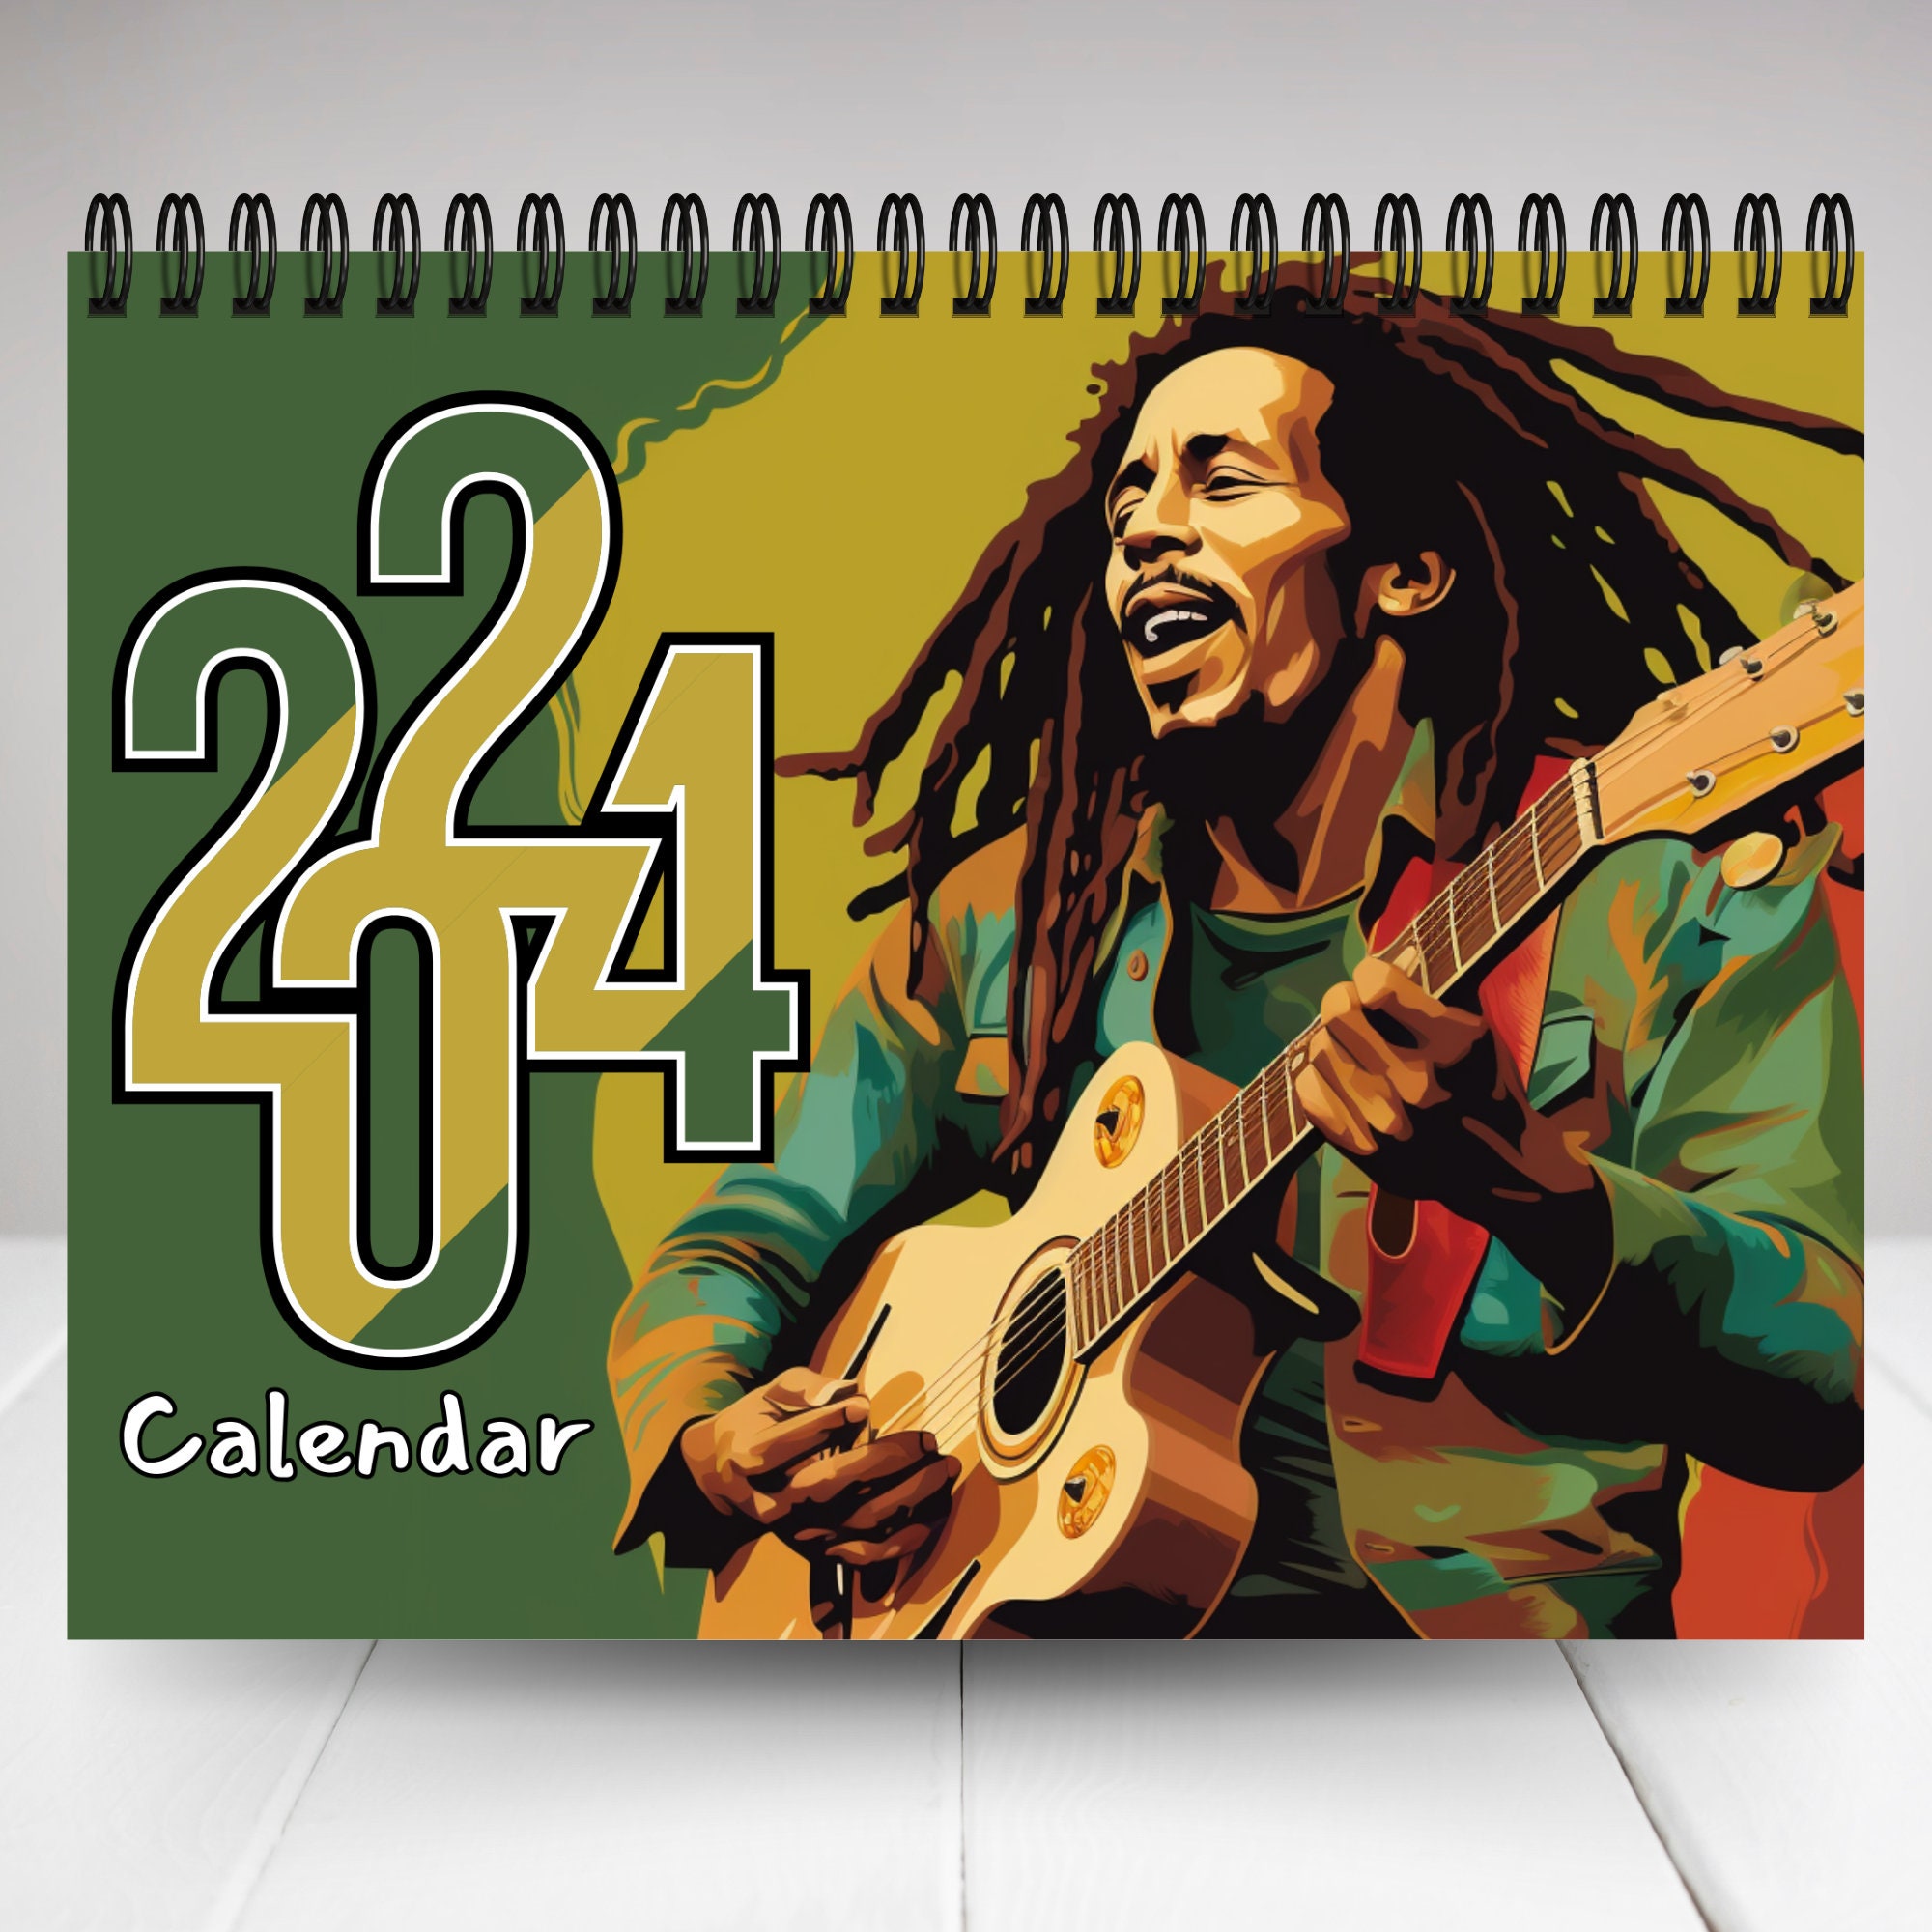 Bob Marley- Legend Poster